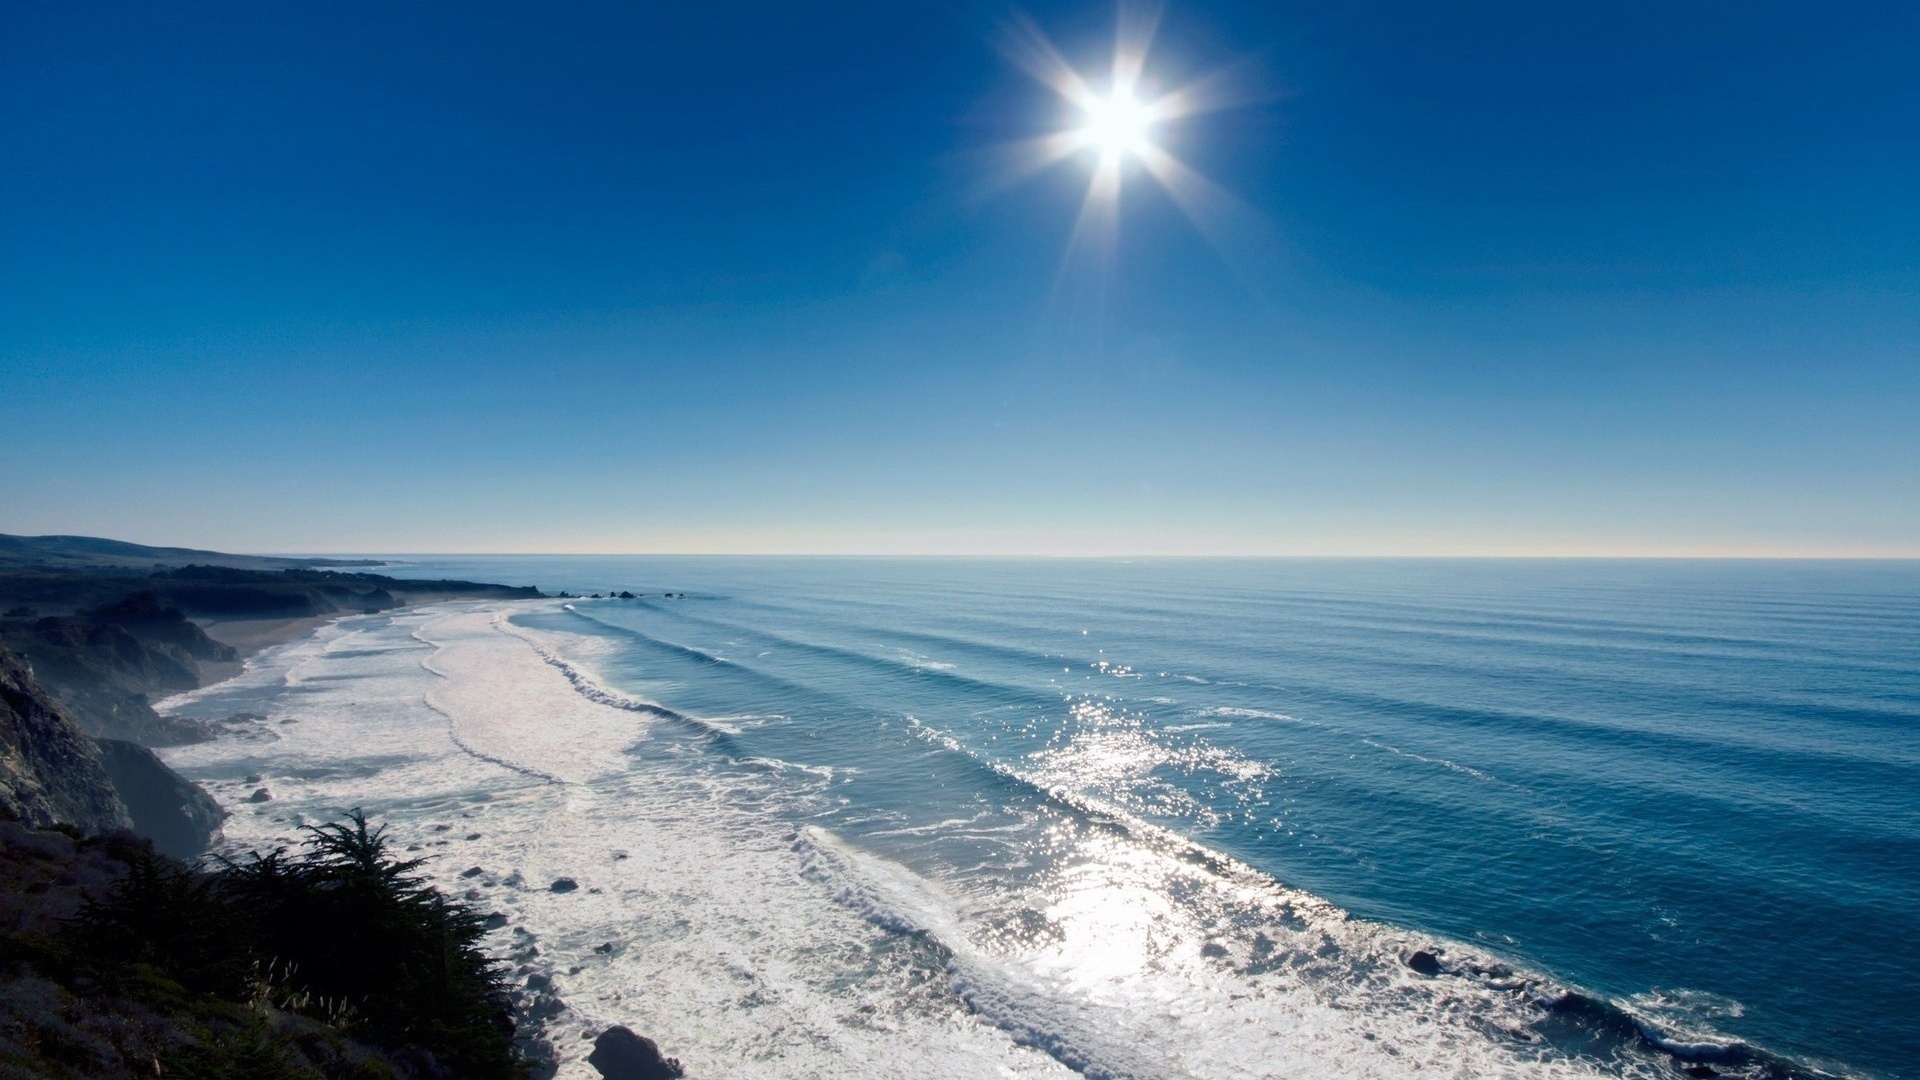 Скачать обои бесплатно Волны, Солнце, Море, Пейзаж картинка на рабочий стол ПК